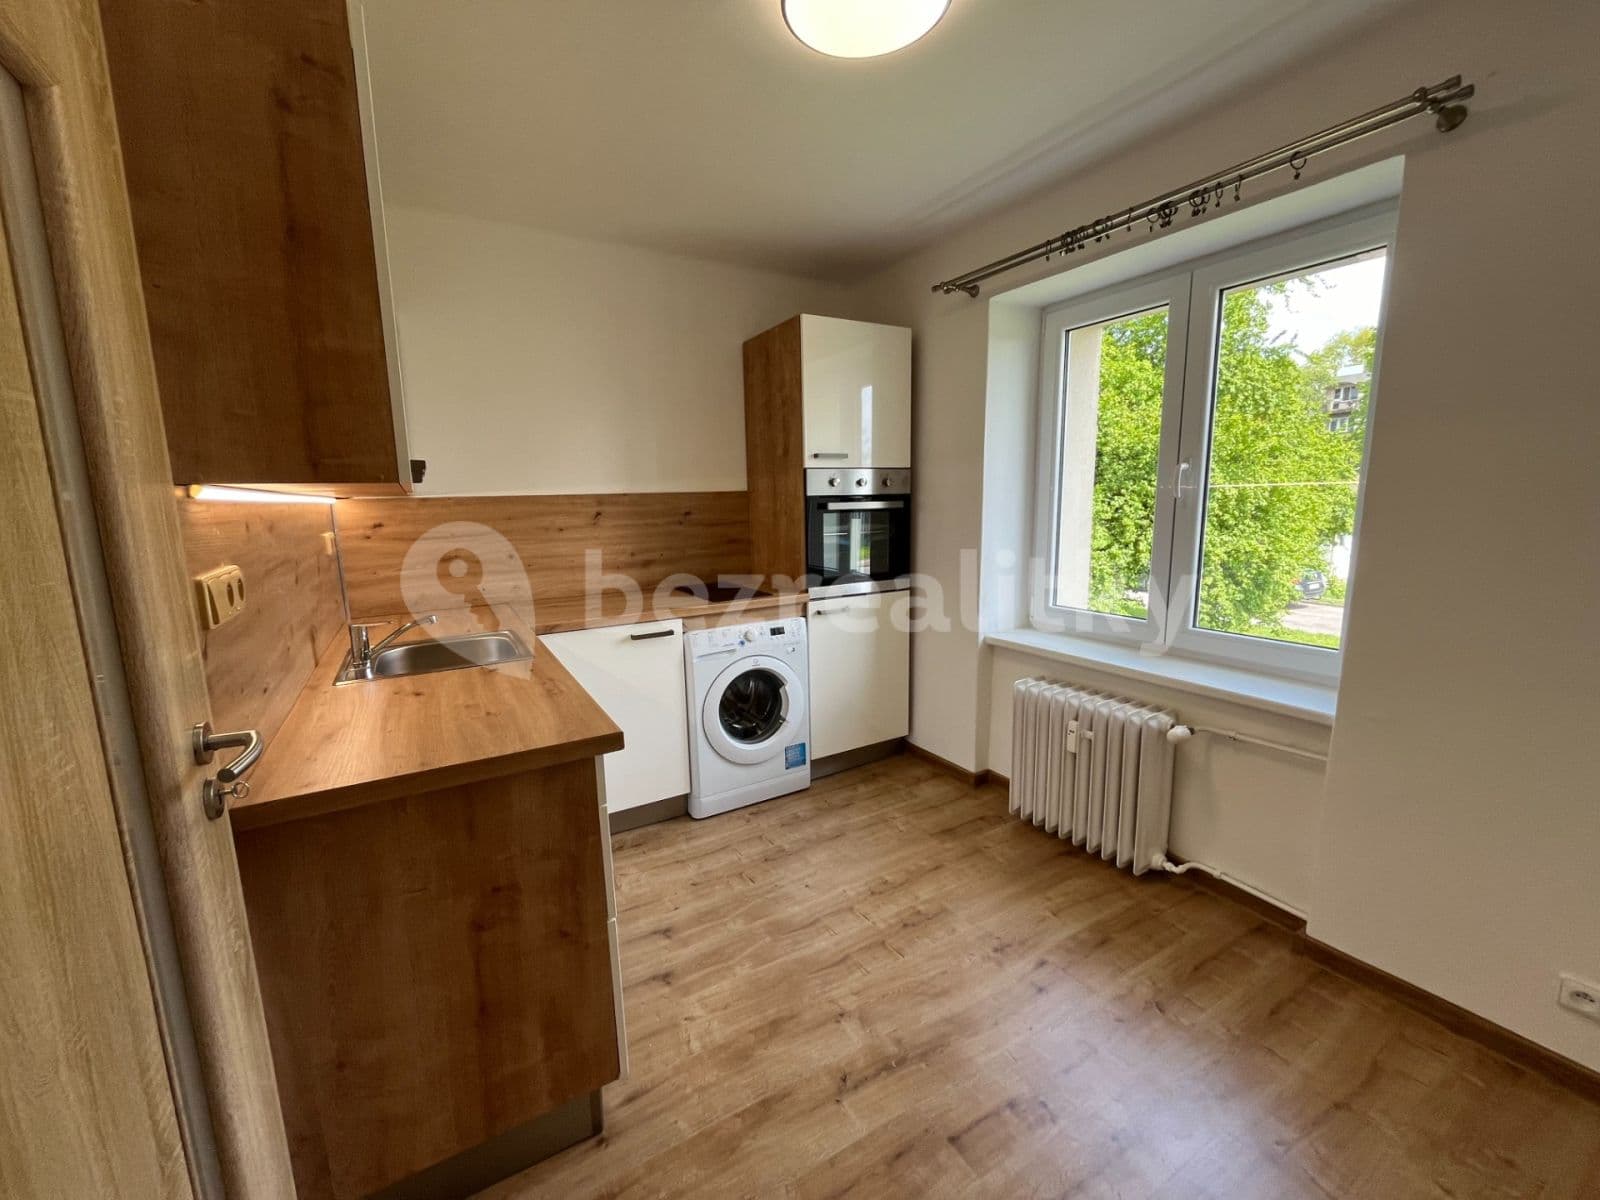 1 bedroom flat for sale, 29 m², Na Okrouhlíku, Pardubice, Pardubický Region